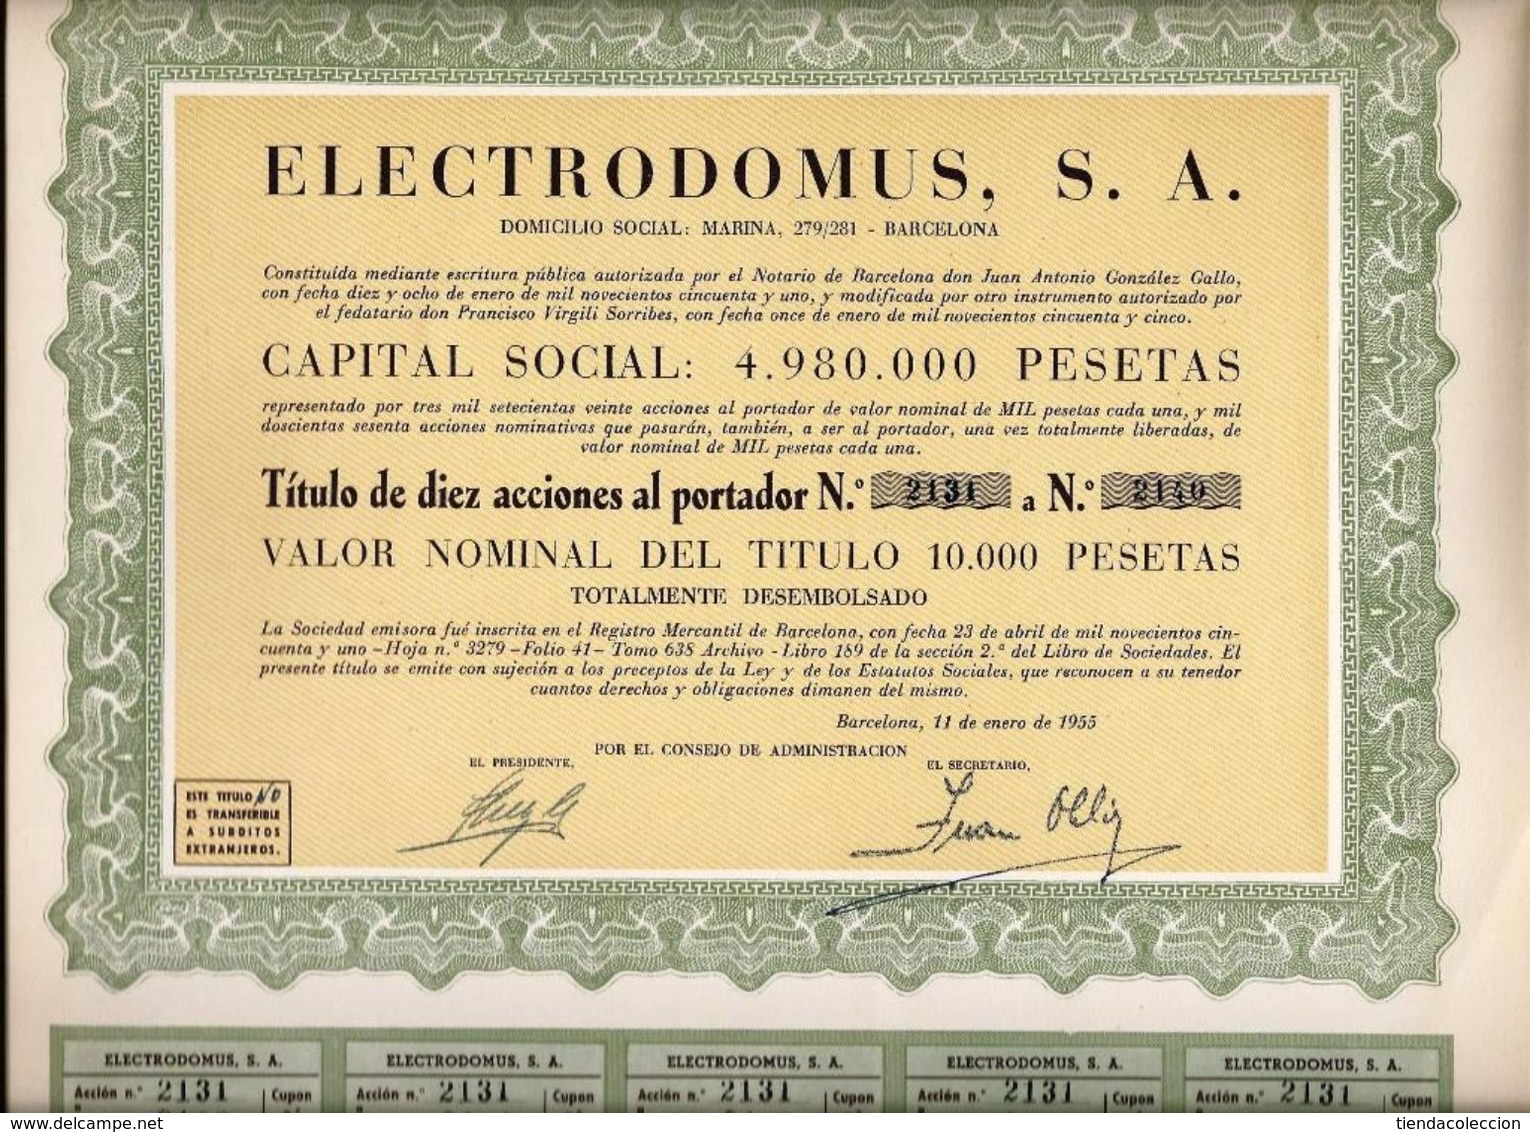 Electrodomus, S. A. - Electricité & Gaz